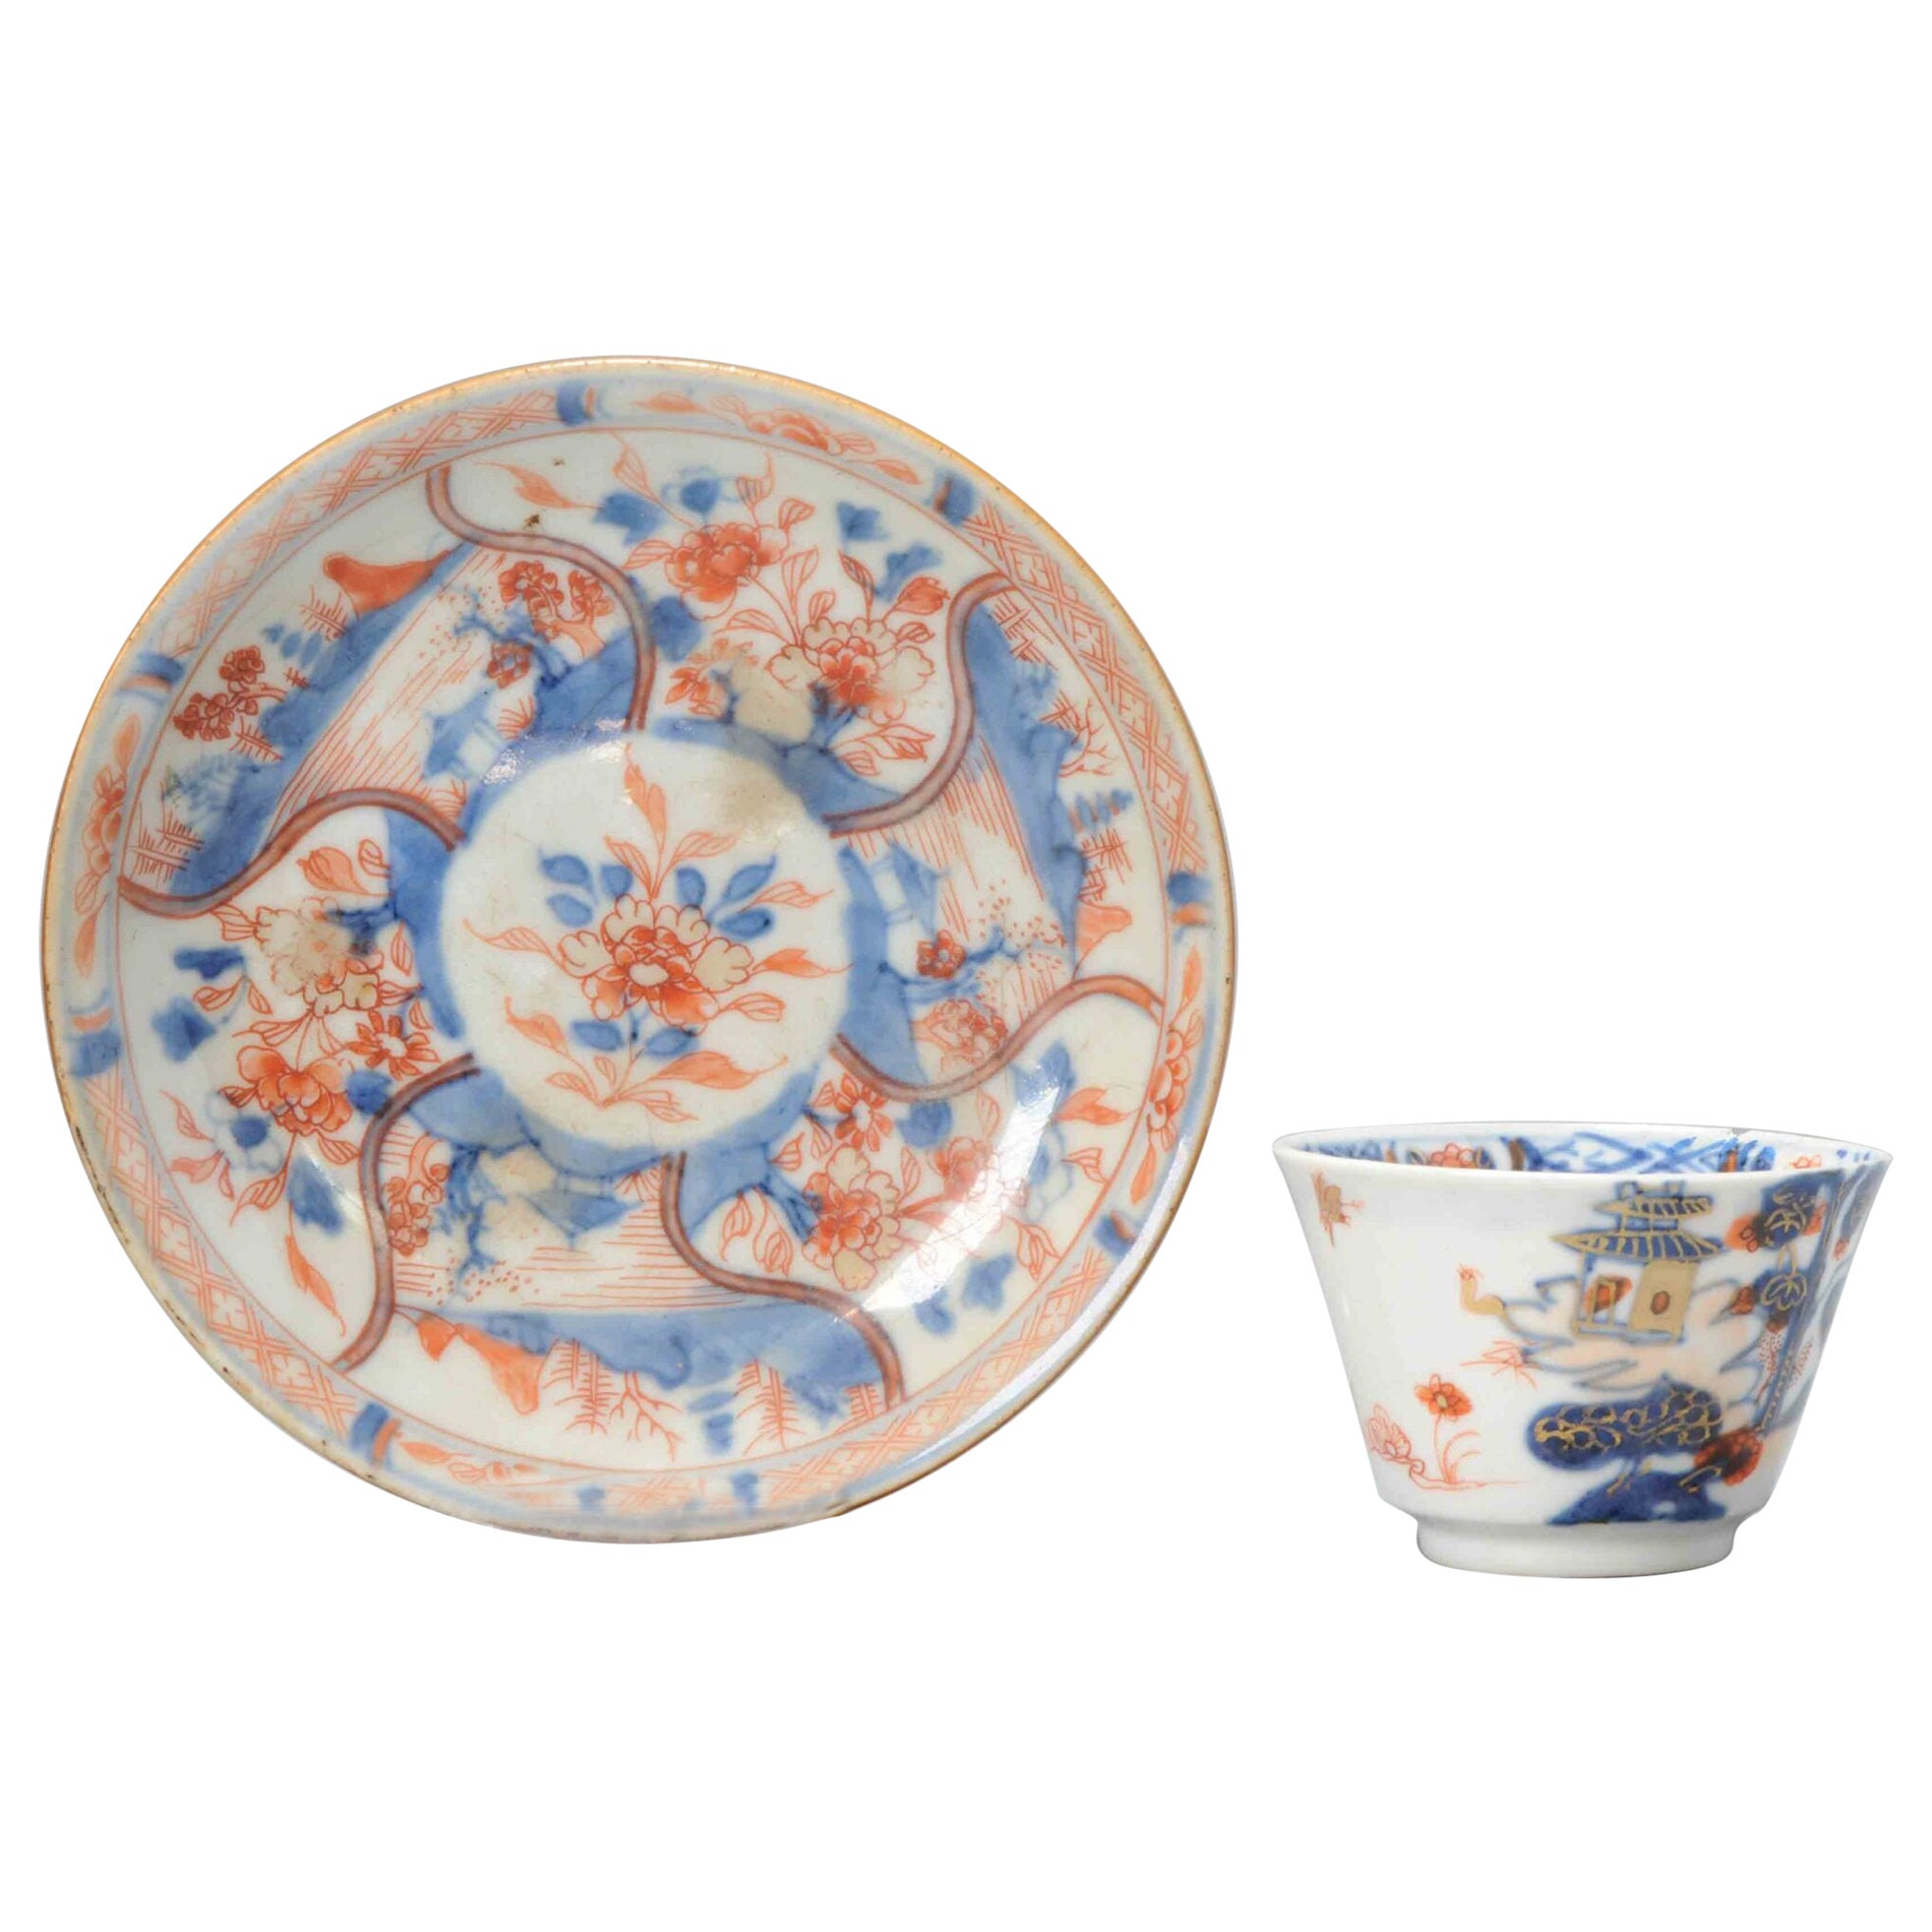 Antique Chinese Porcelain Kangxi Period Tea Bowl Floral Imari Cafe au Lait For Sale